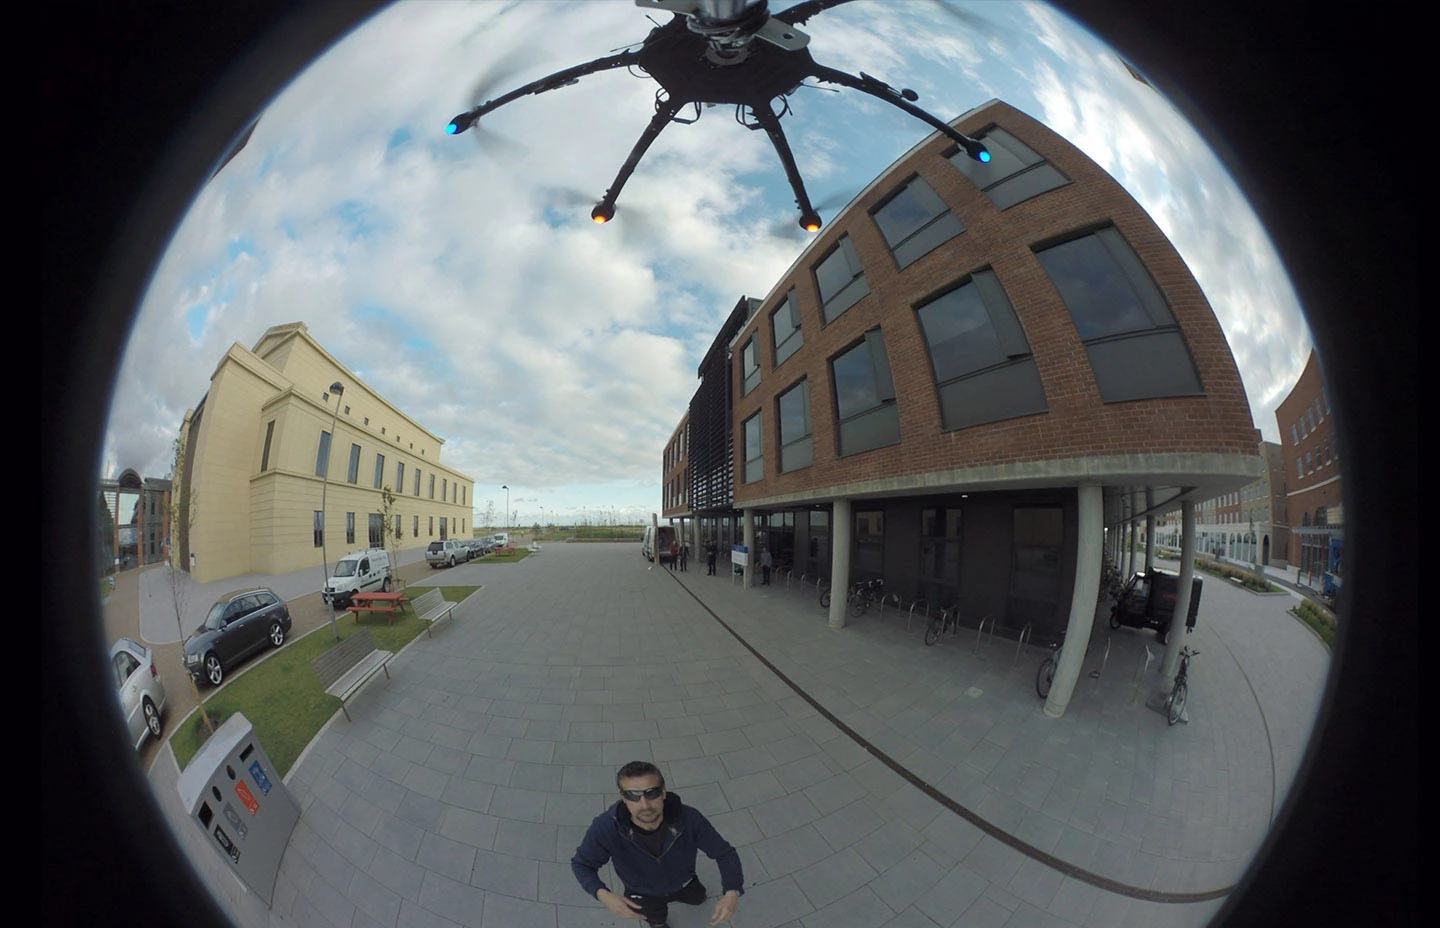 Man below drone capturing 360 footage of buildings